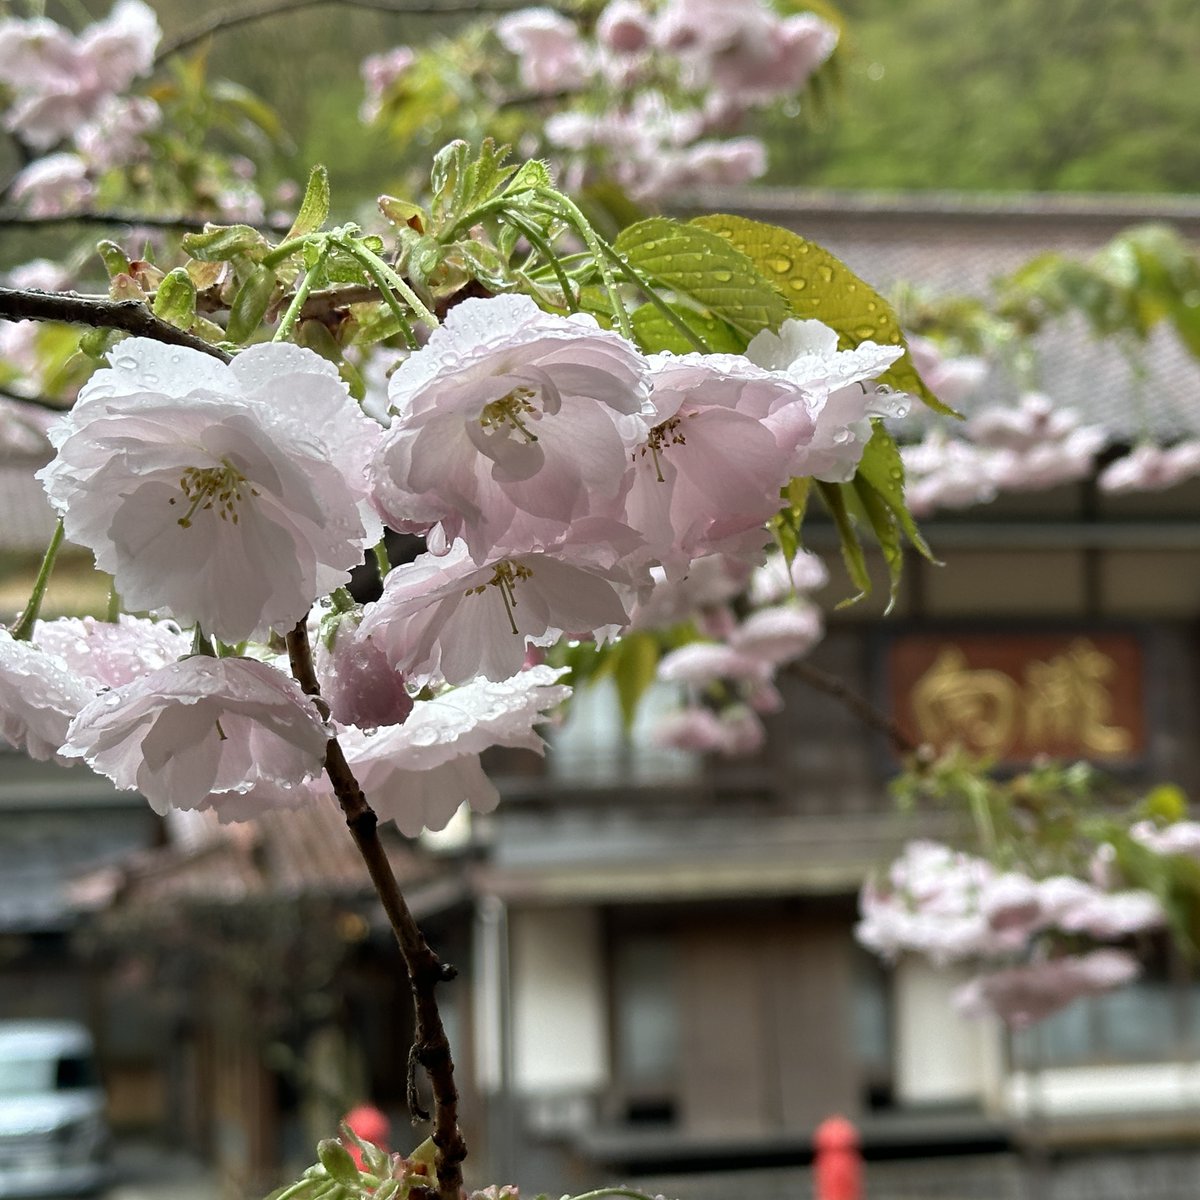 おはようございます。明け方の雨は上がり、曇りの #会津 です。中庭 #ソメイヨシノ #エドヒガンザクラ #満開、#しだれ桜 満開、公園の #八重桜 3分咲きです。大広間屋根からの景色は例年通り美しく 今日も本気撮り出来そうです。今日はどこから撮りますか？毎日悩みます。#向瀧 #旅館 #温泉 #東山温泉